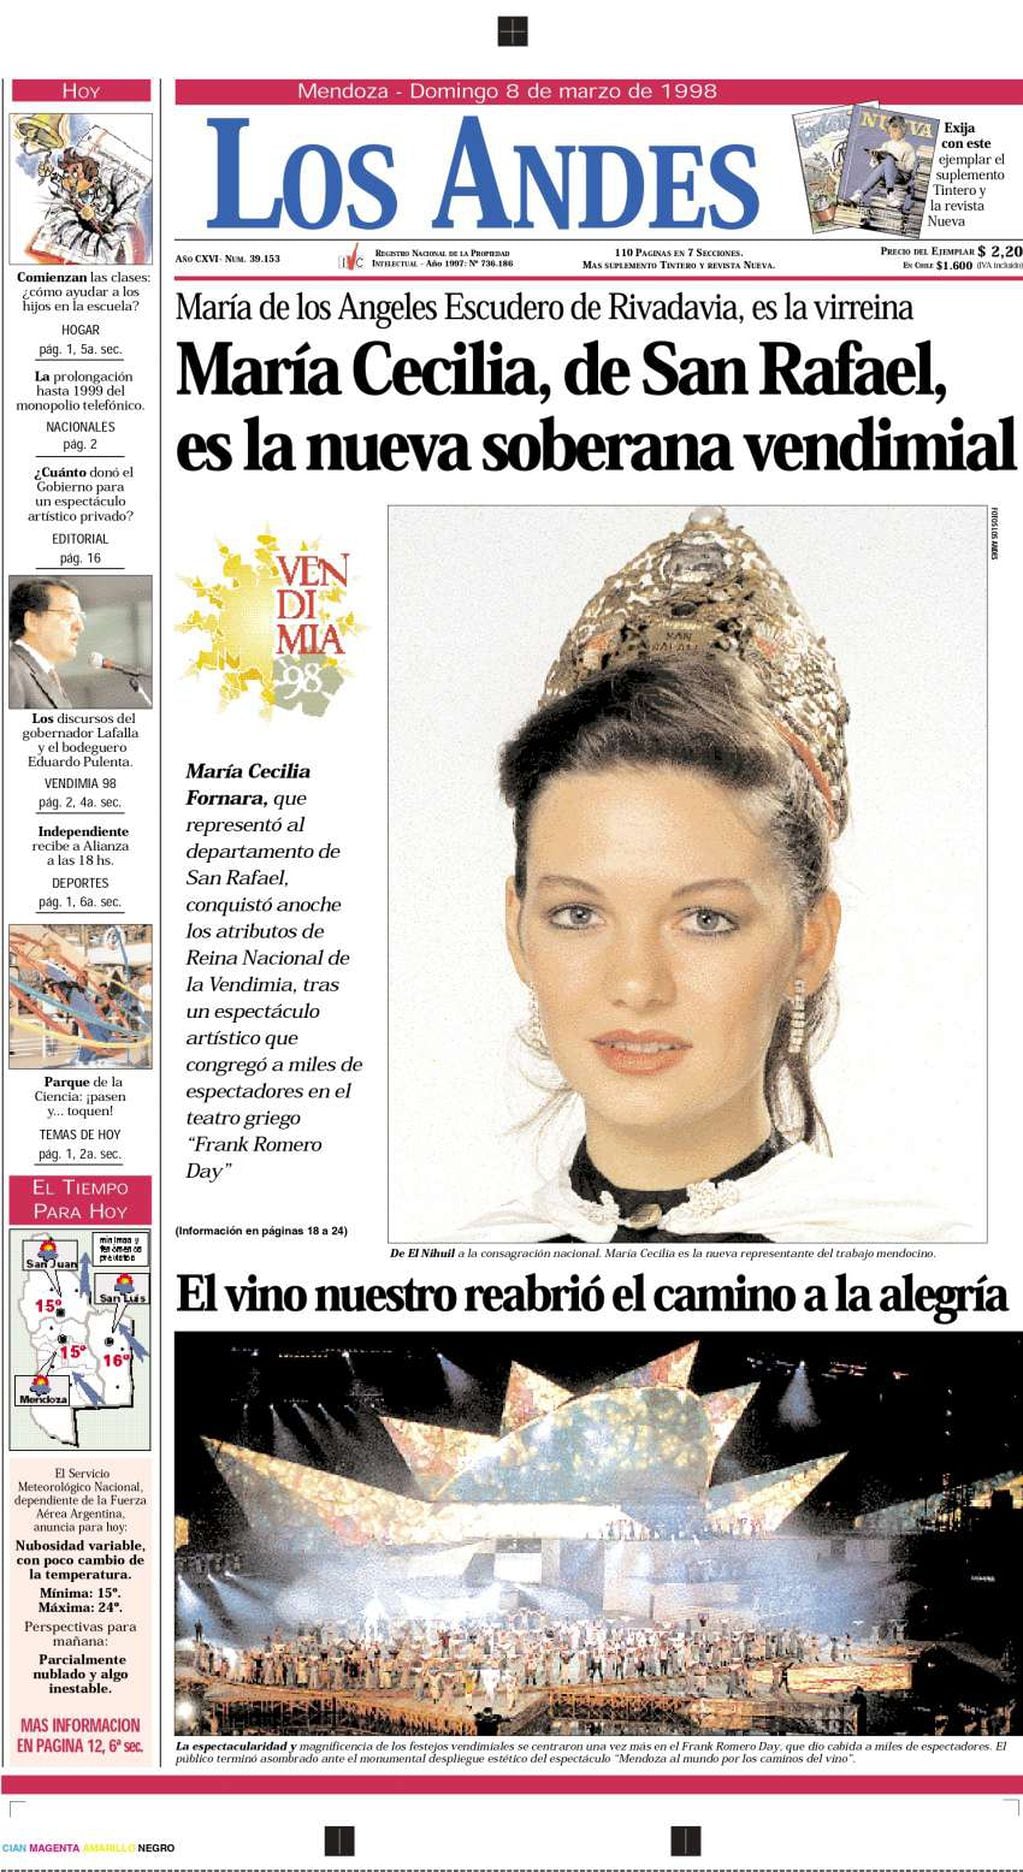 
Tapa histórica. El 8 de marzo de 1998, Los Andes reflejaba que la sanrafaelina Cecilia Fornara era la nueva reina.
